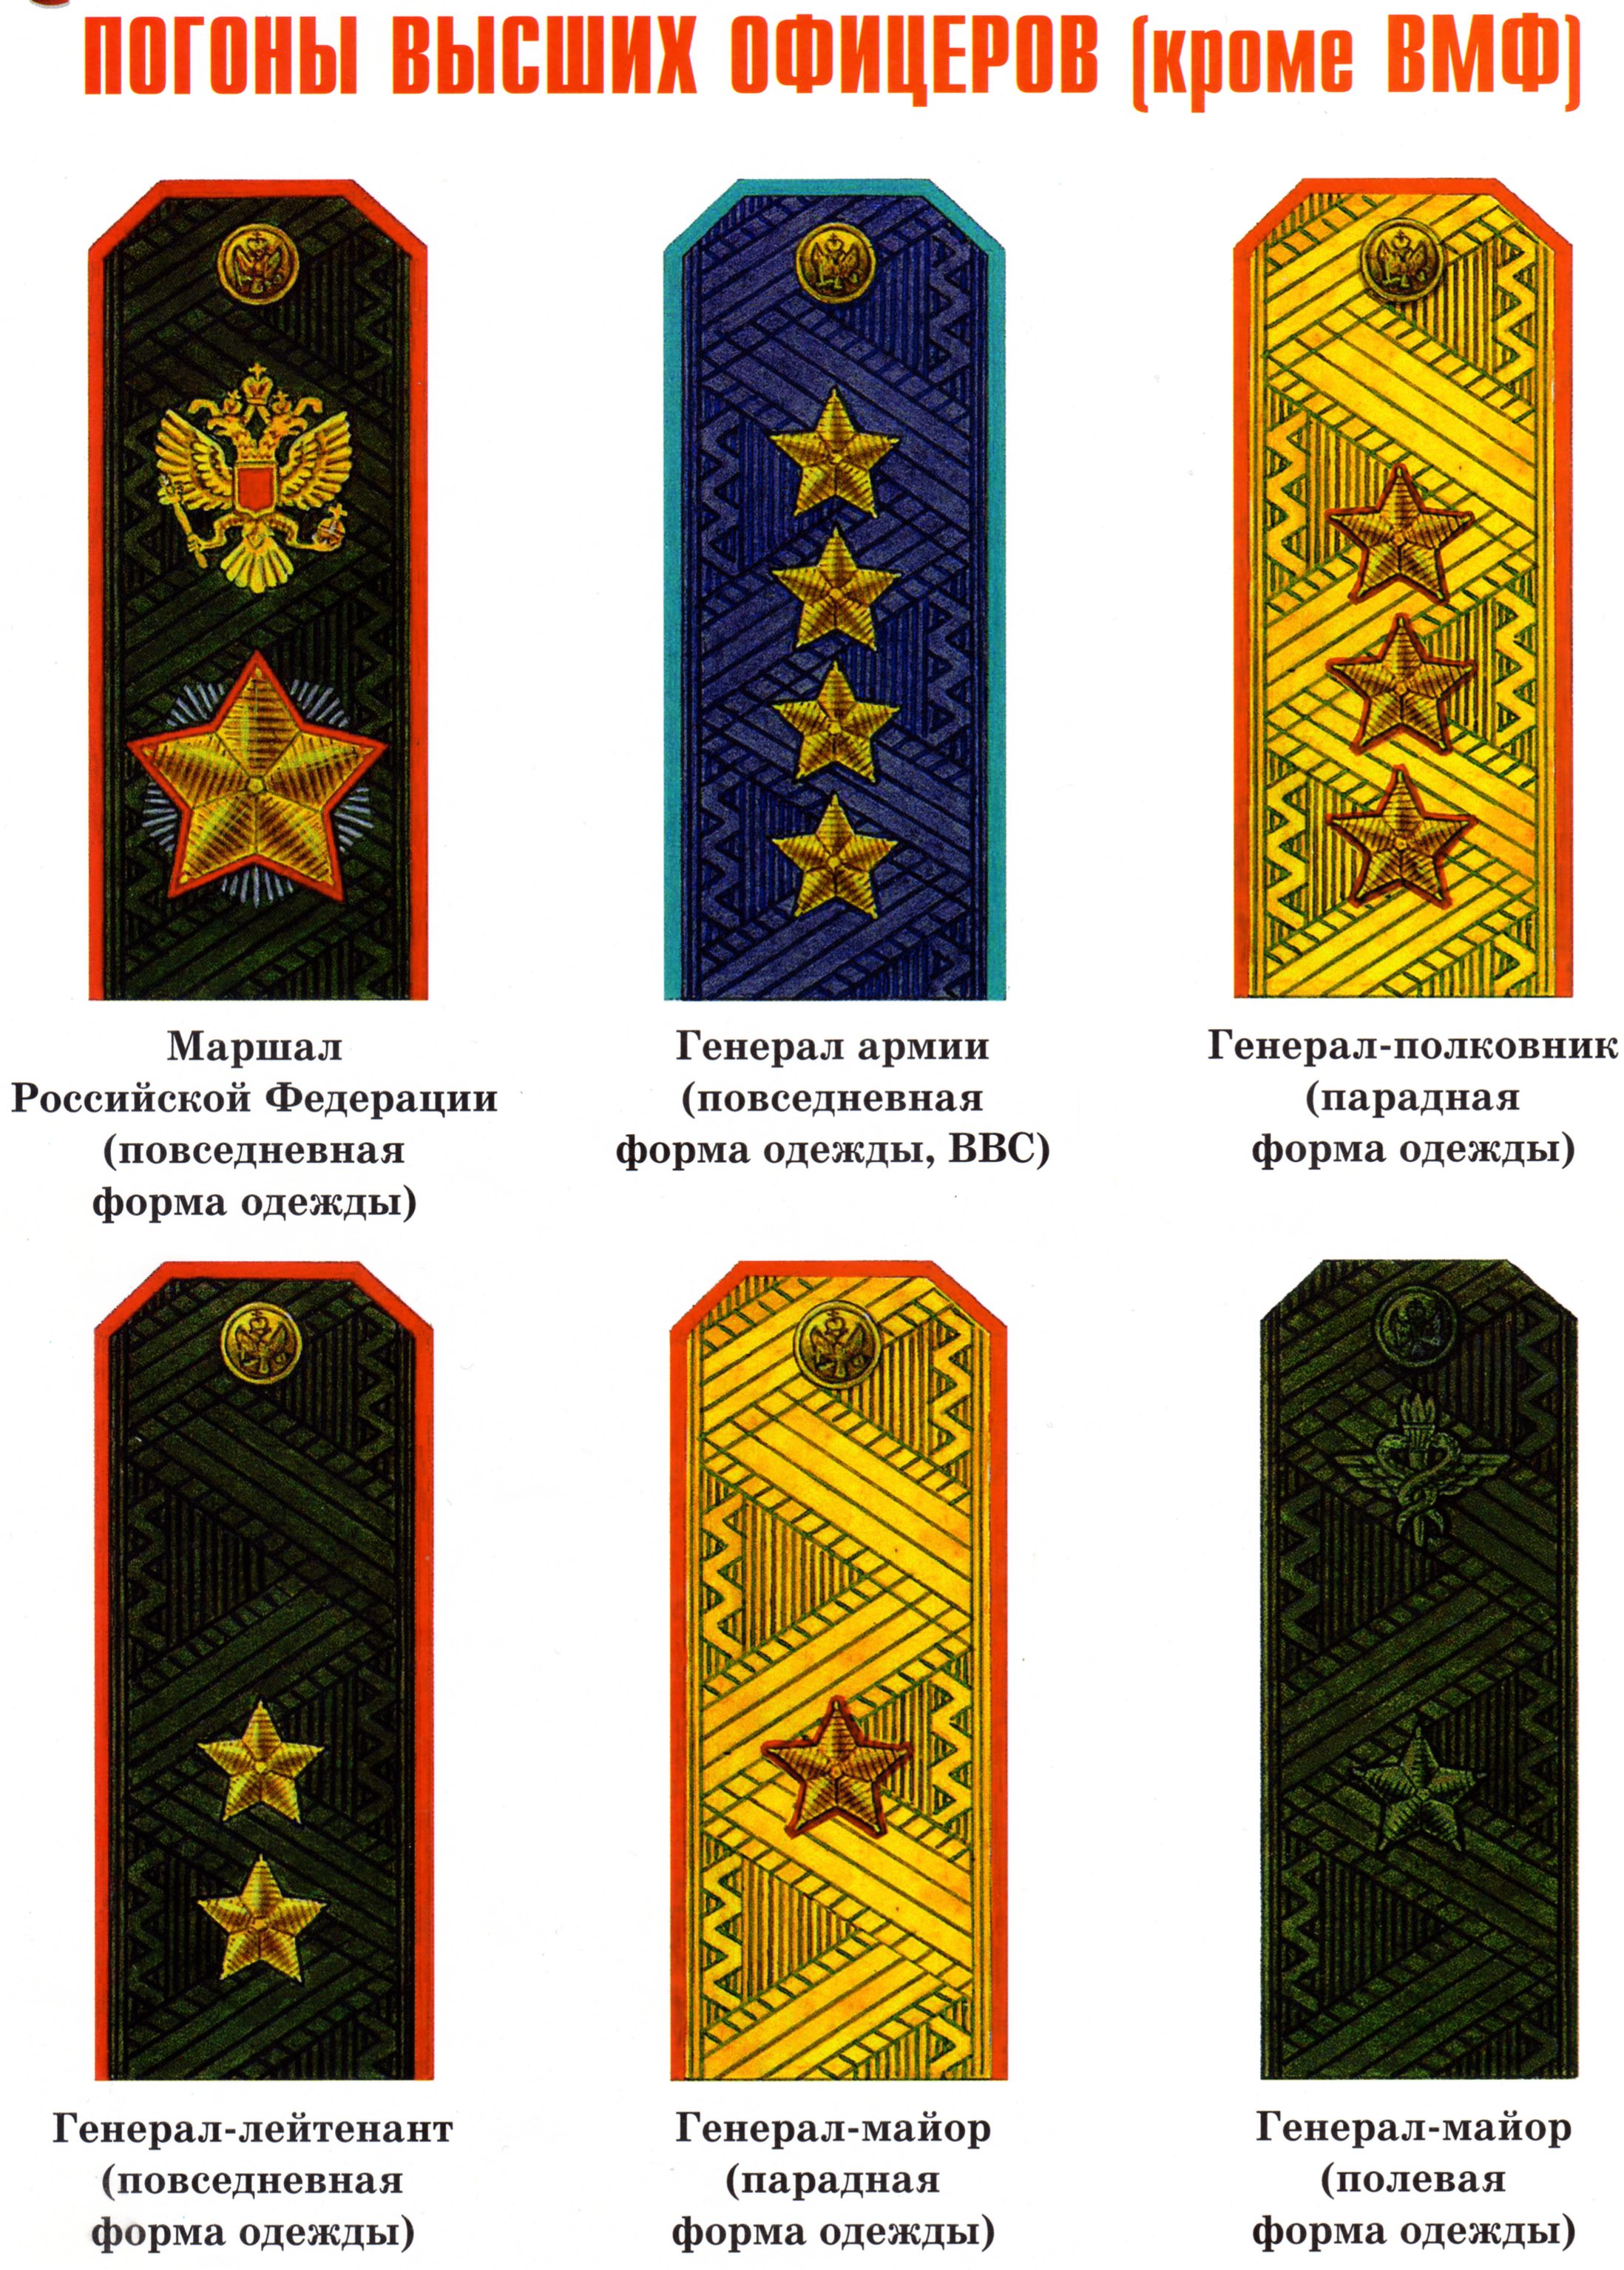 Погоны и звания в армии россии фото